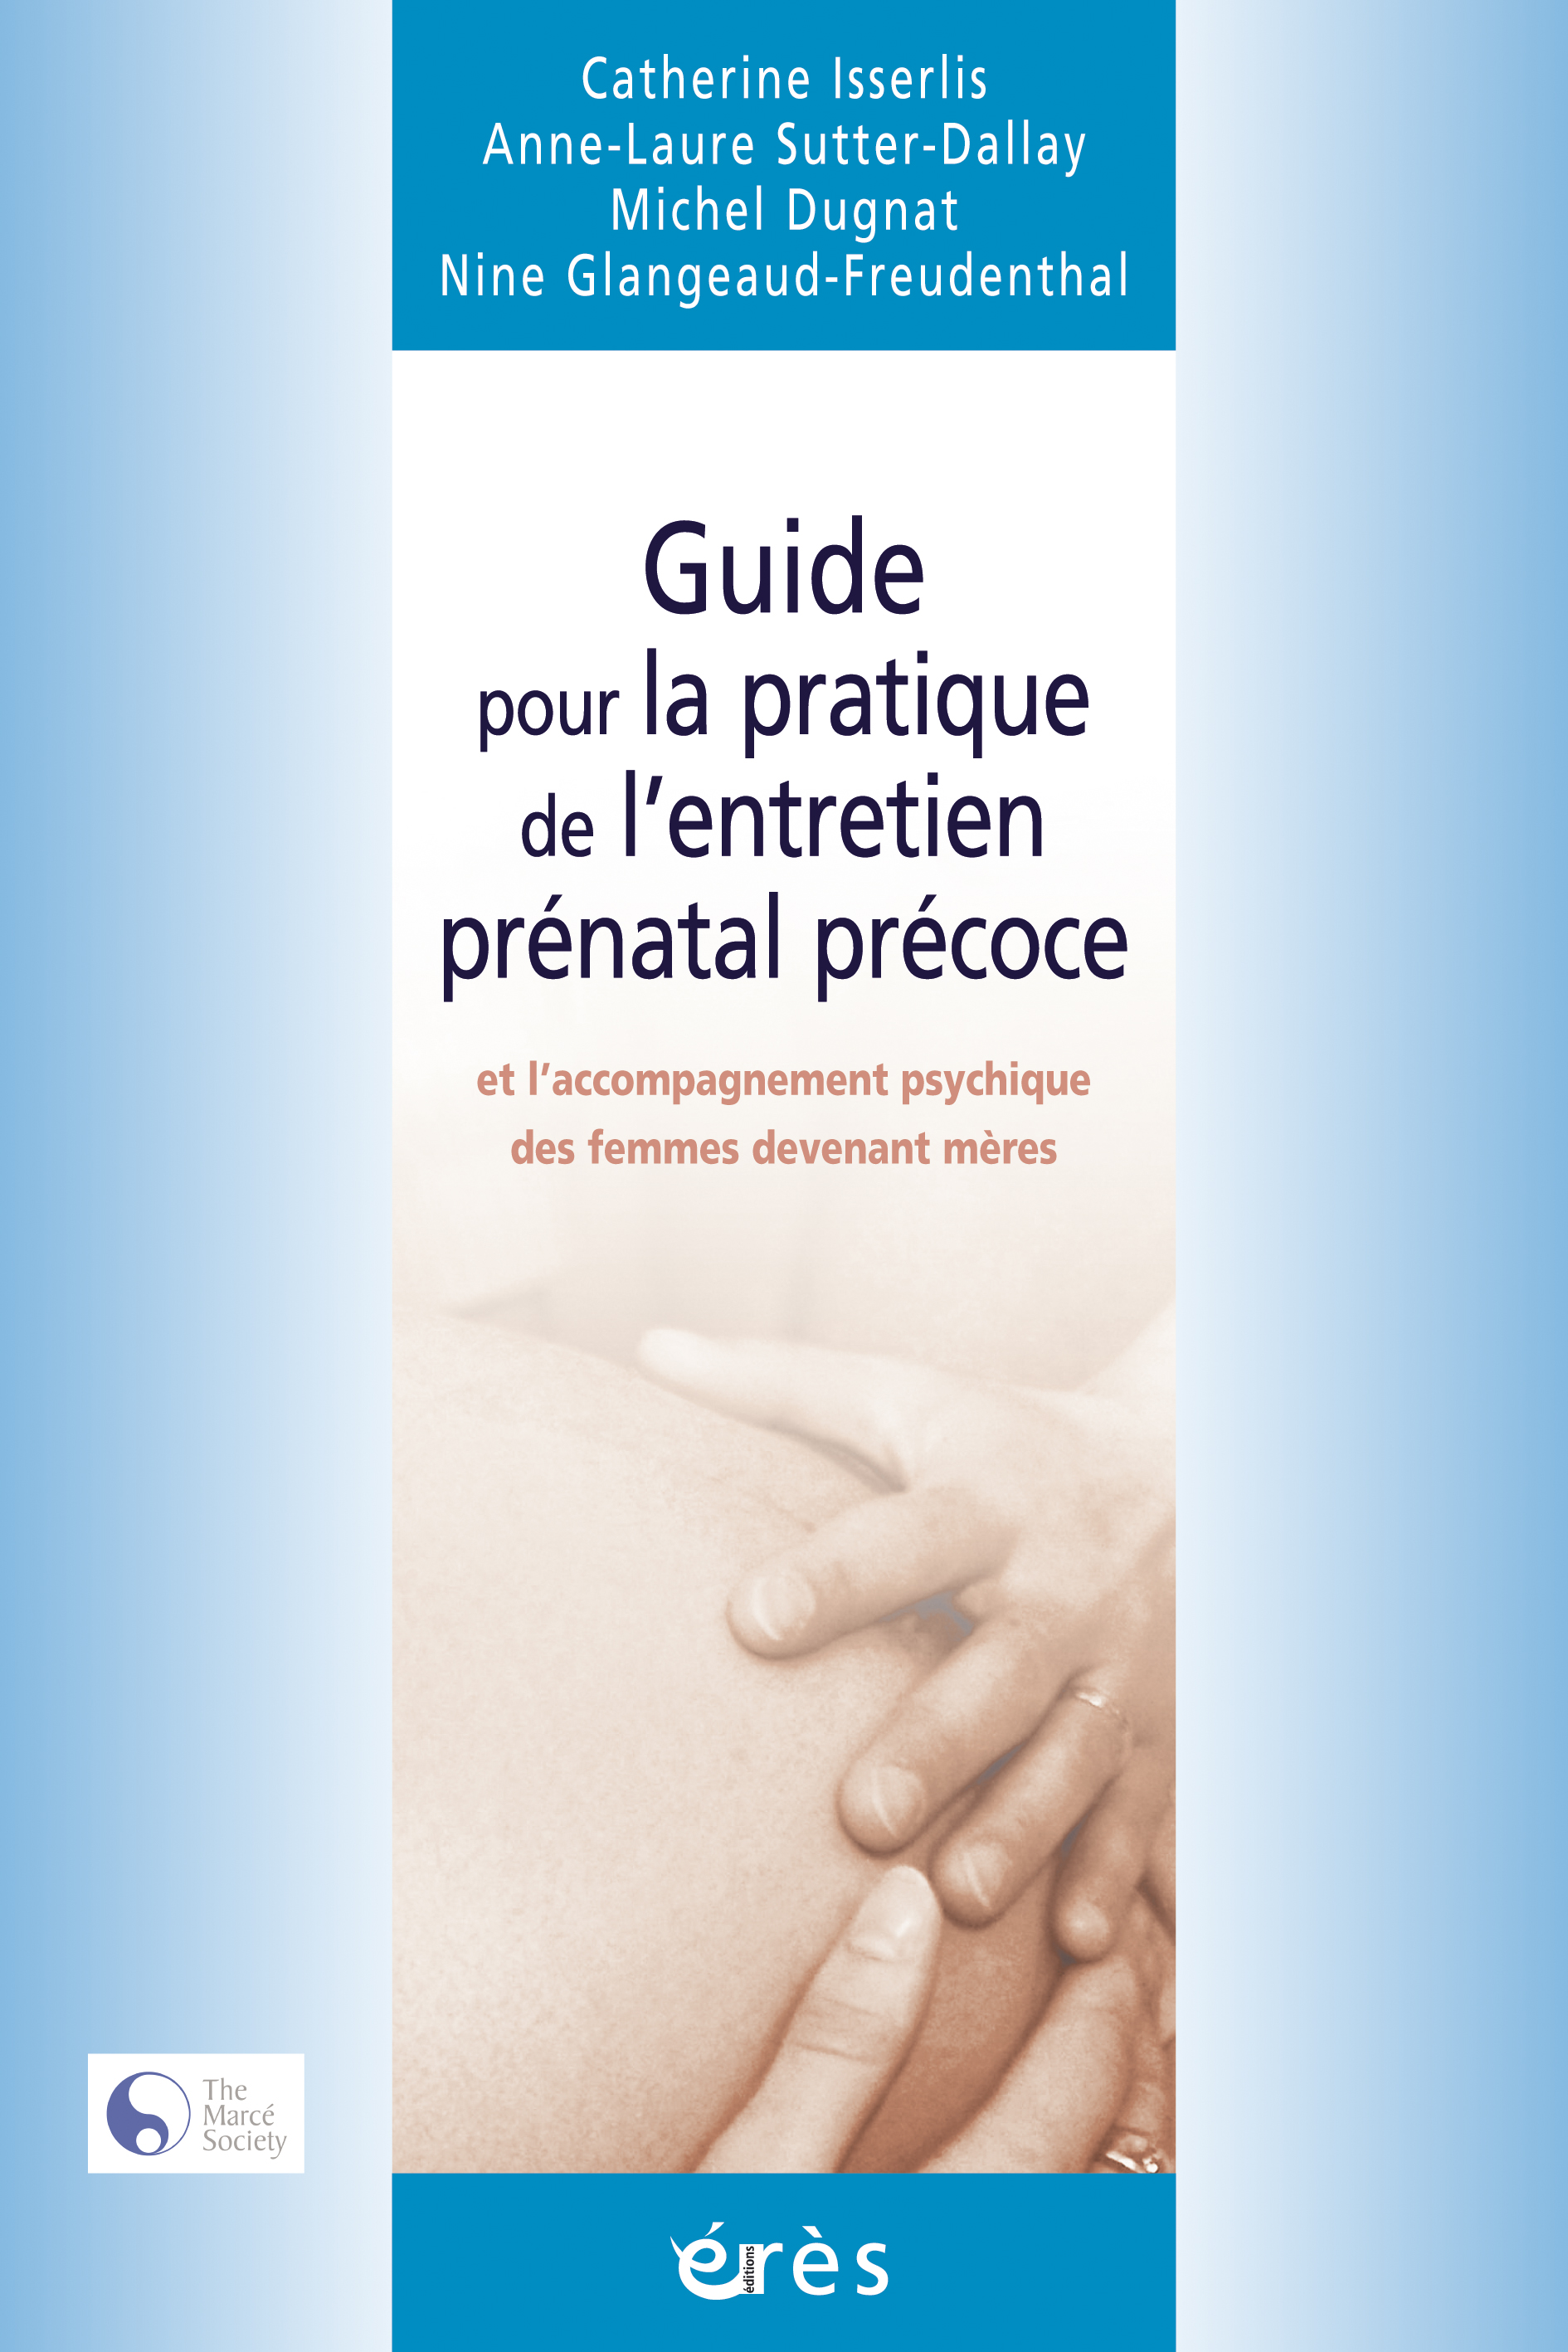 Guide pour la pratique de l’entretien prénatal précoce et l’accompagnement psychique des femmes devenant mères